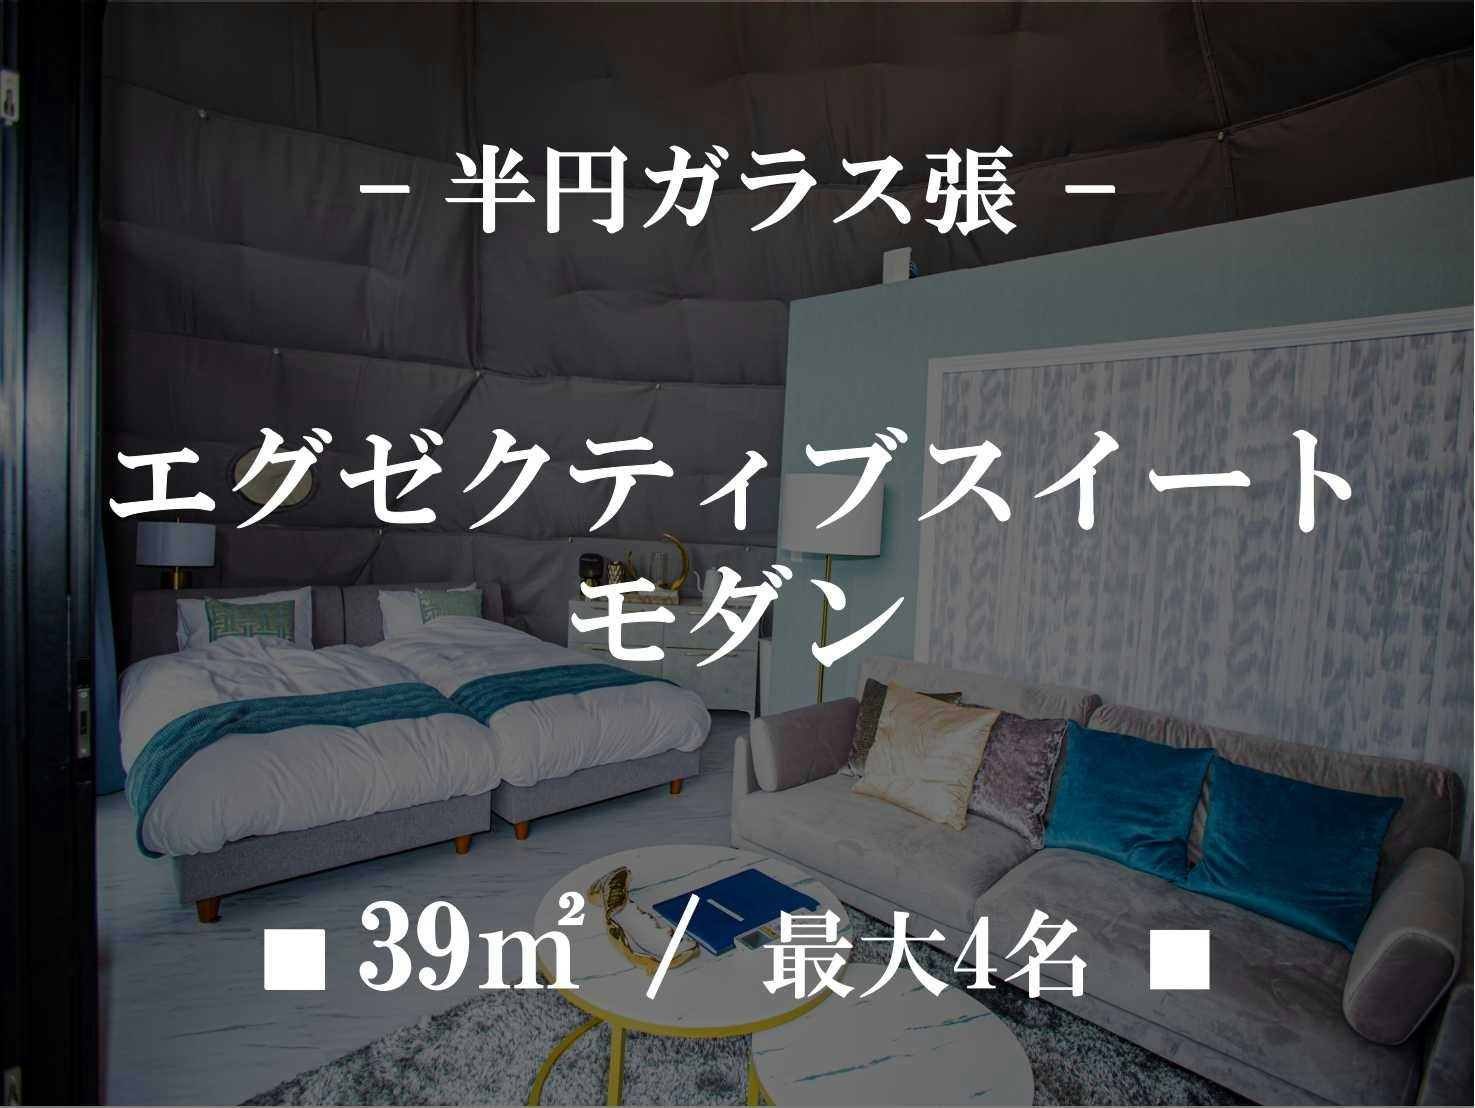 【貸切】エグゼクティブスイート モダンラグジュアリー10m半円ドーム ■39m2/最大4名■